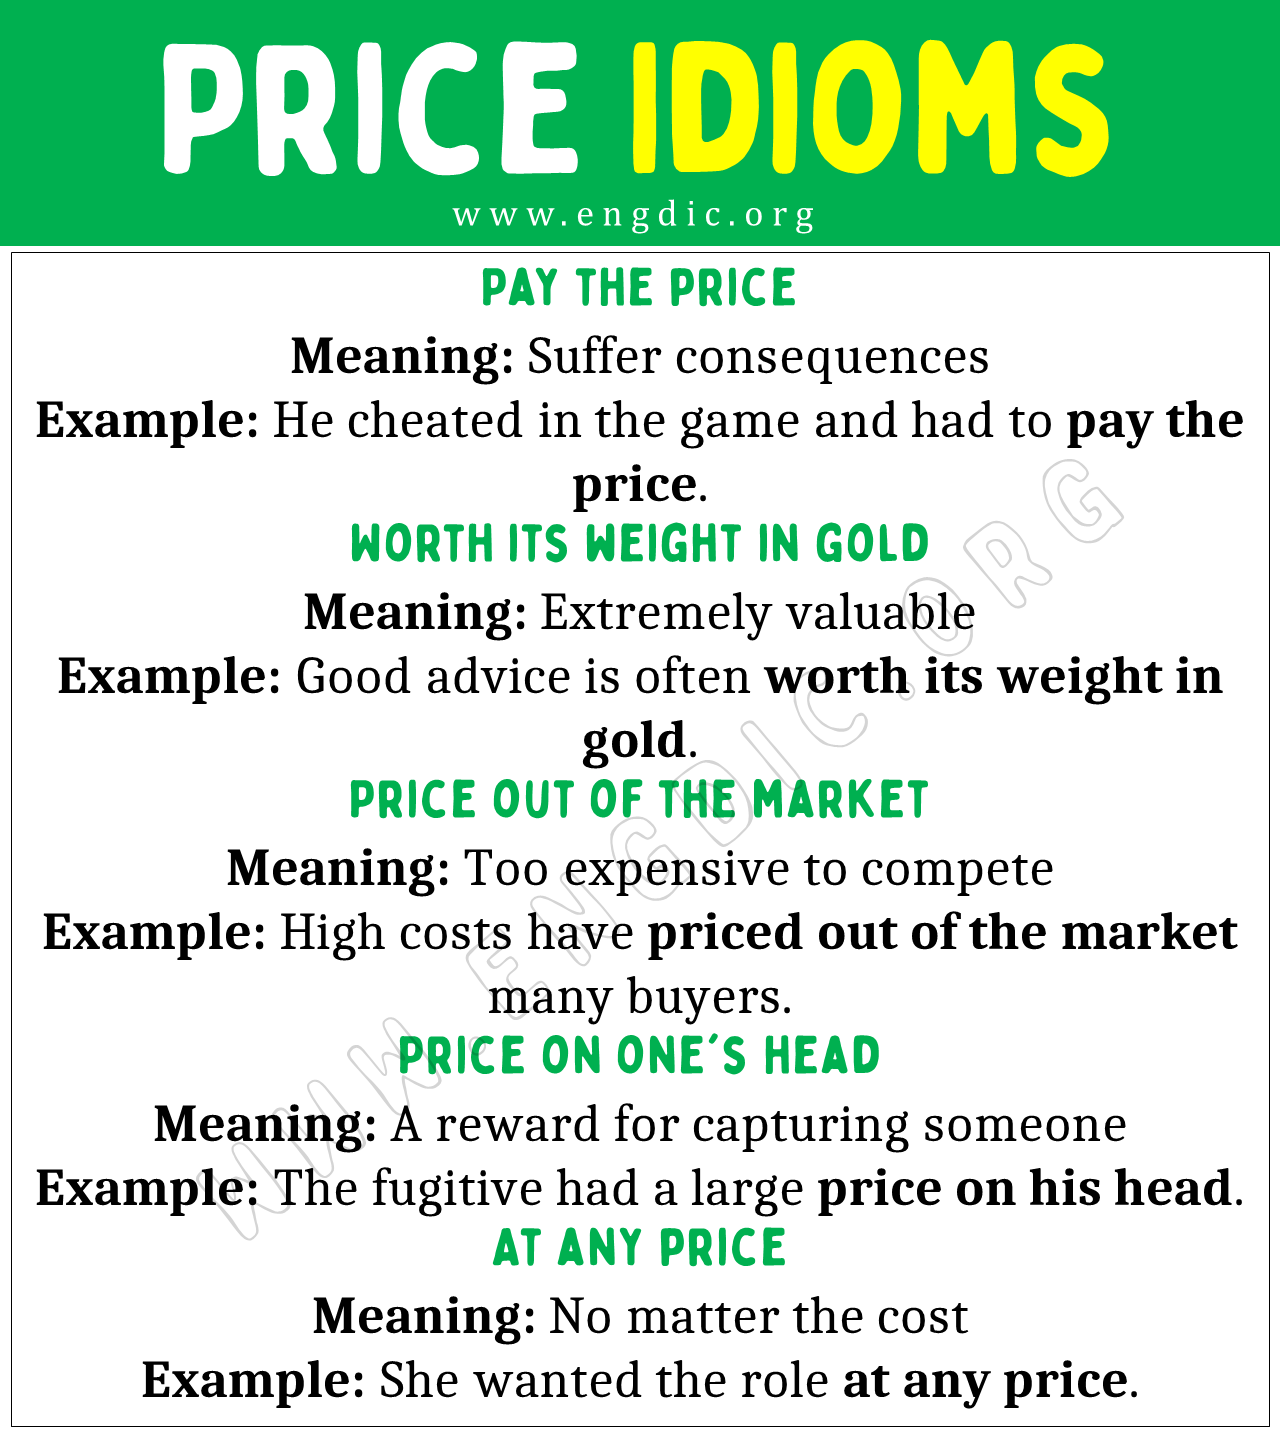 Price Idioms